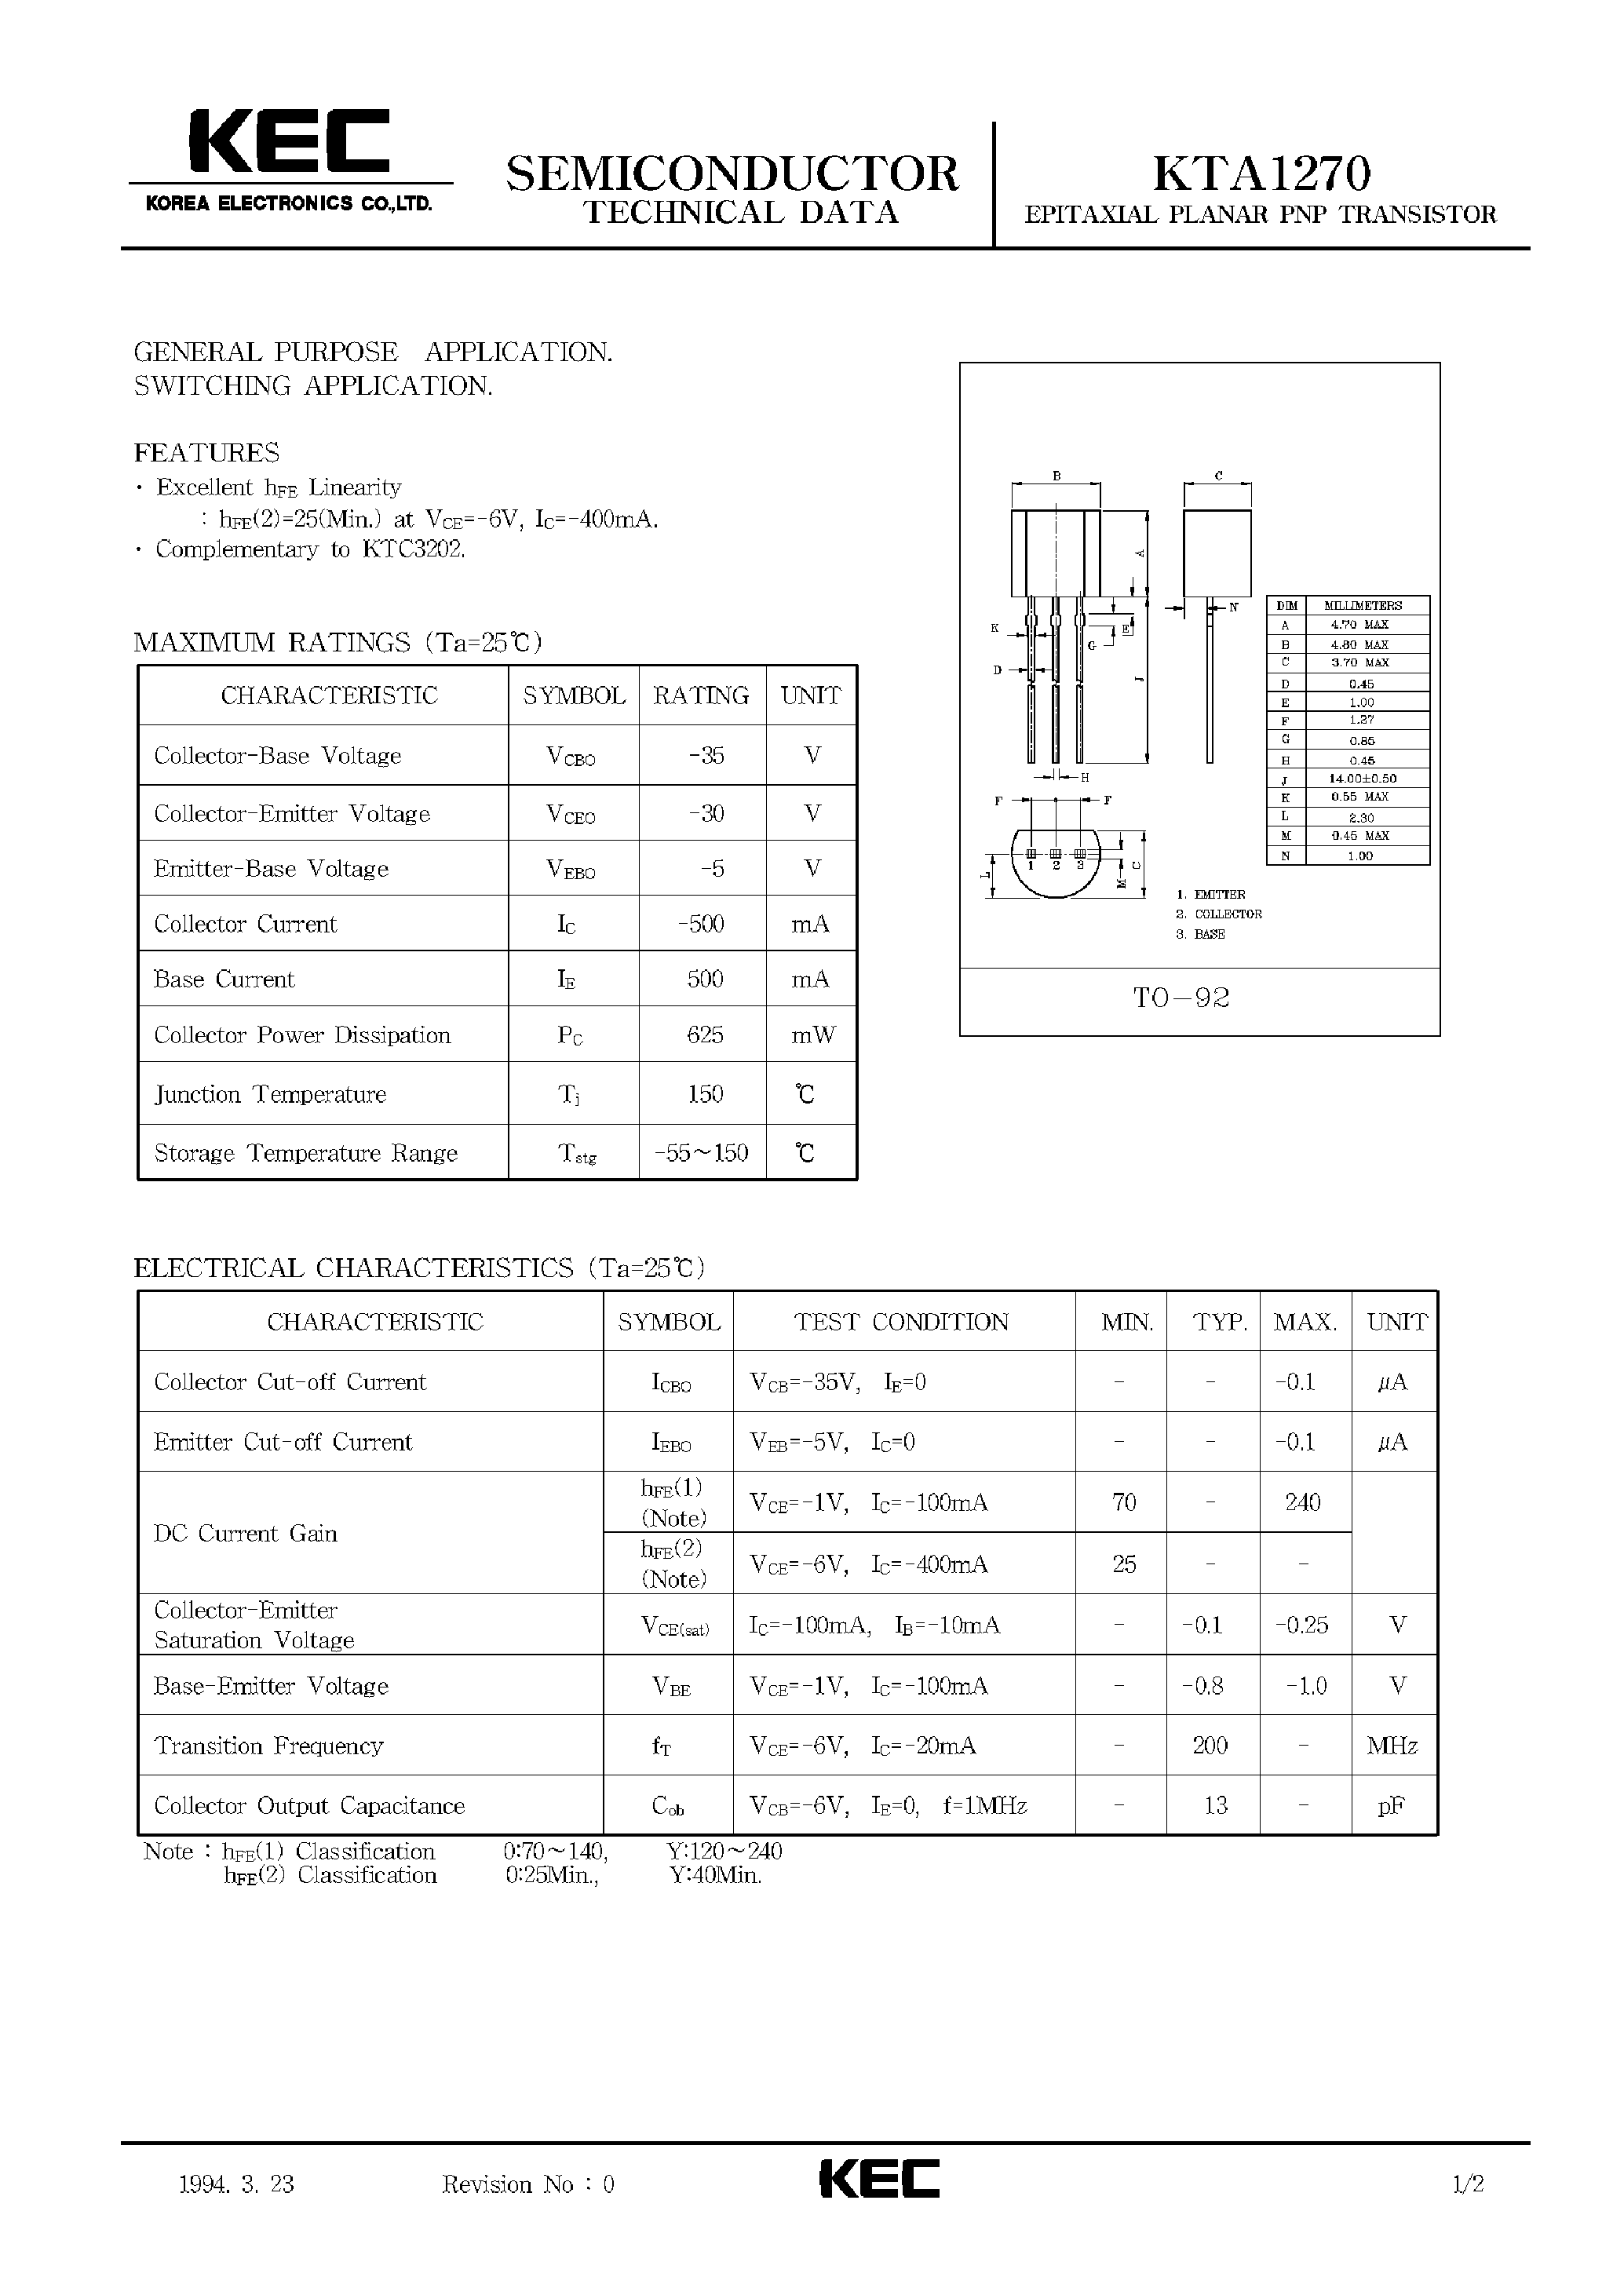 Datasheet KTA1270 - EPITAXIAL PLANAR PNP TRANSISTOR (GENERAL PURPOSE/ SWITCHING) page 1